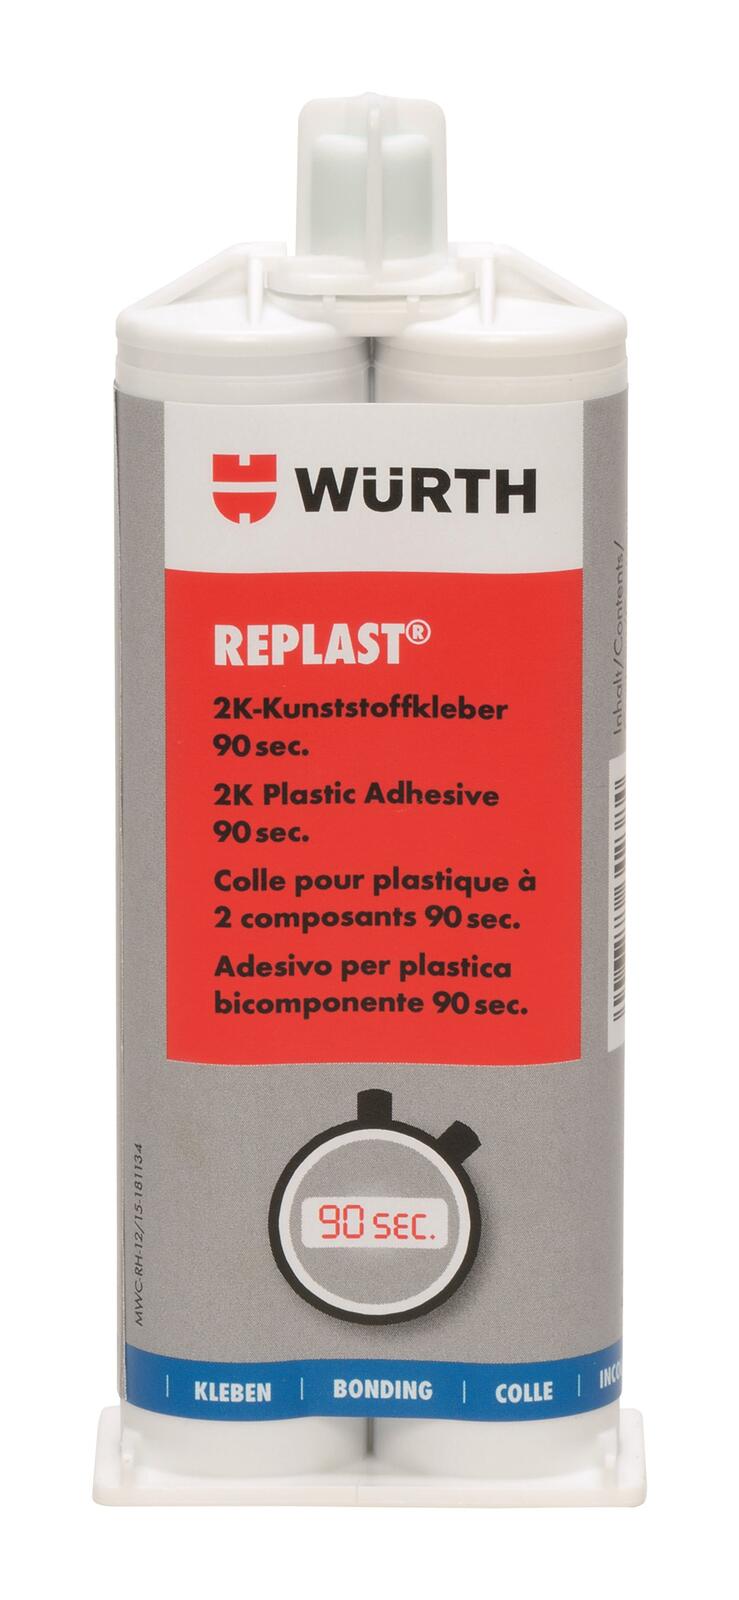 Würth: colle bi-composant pour plastique